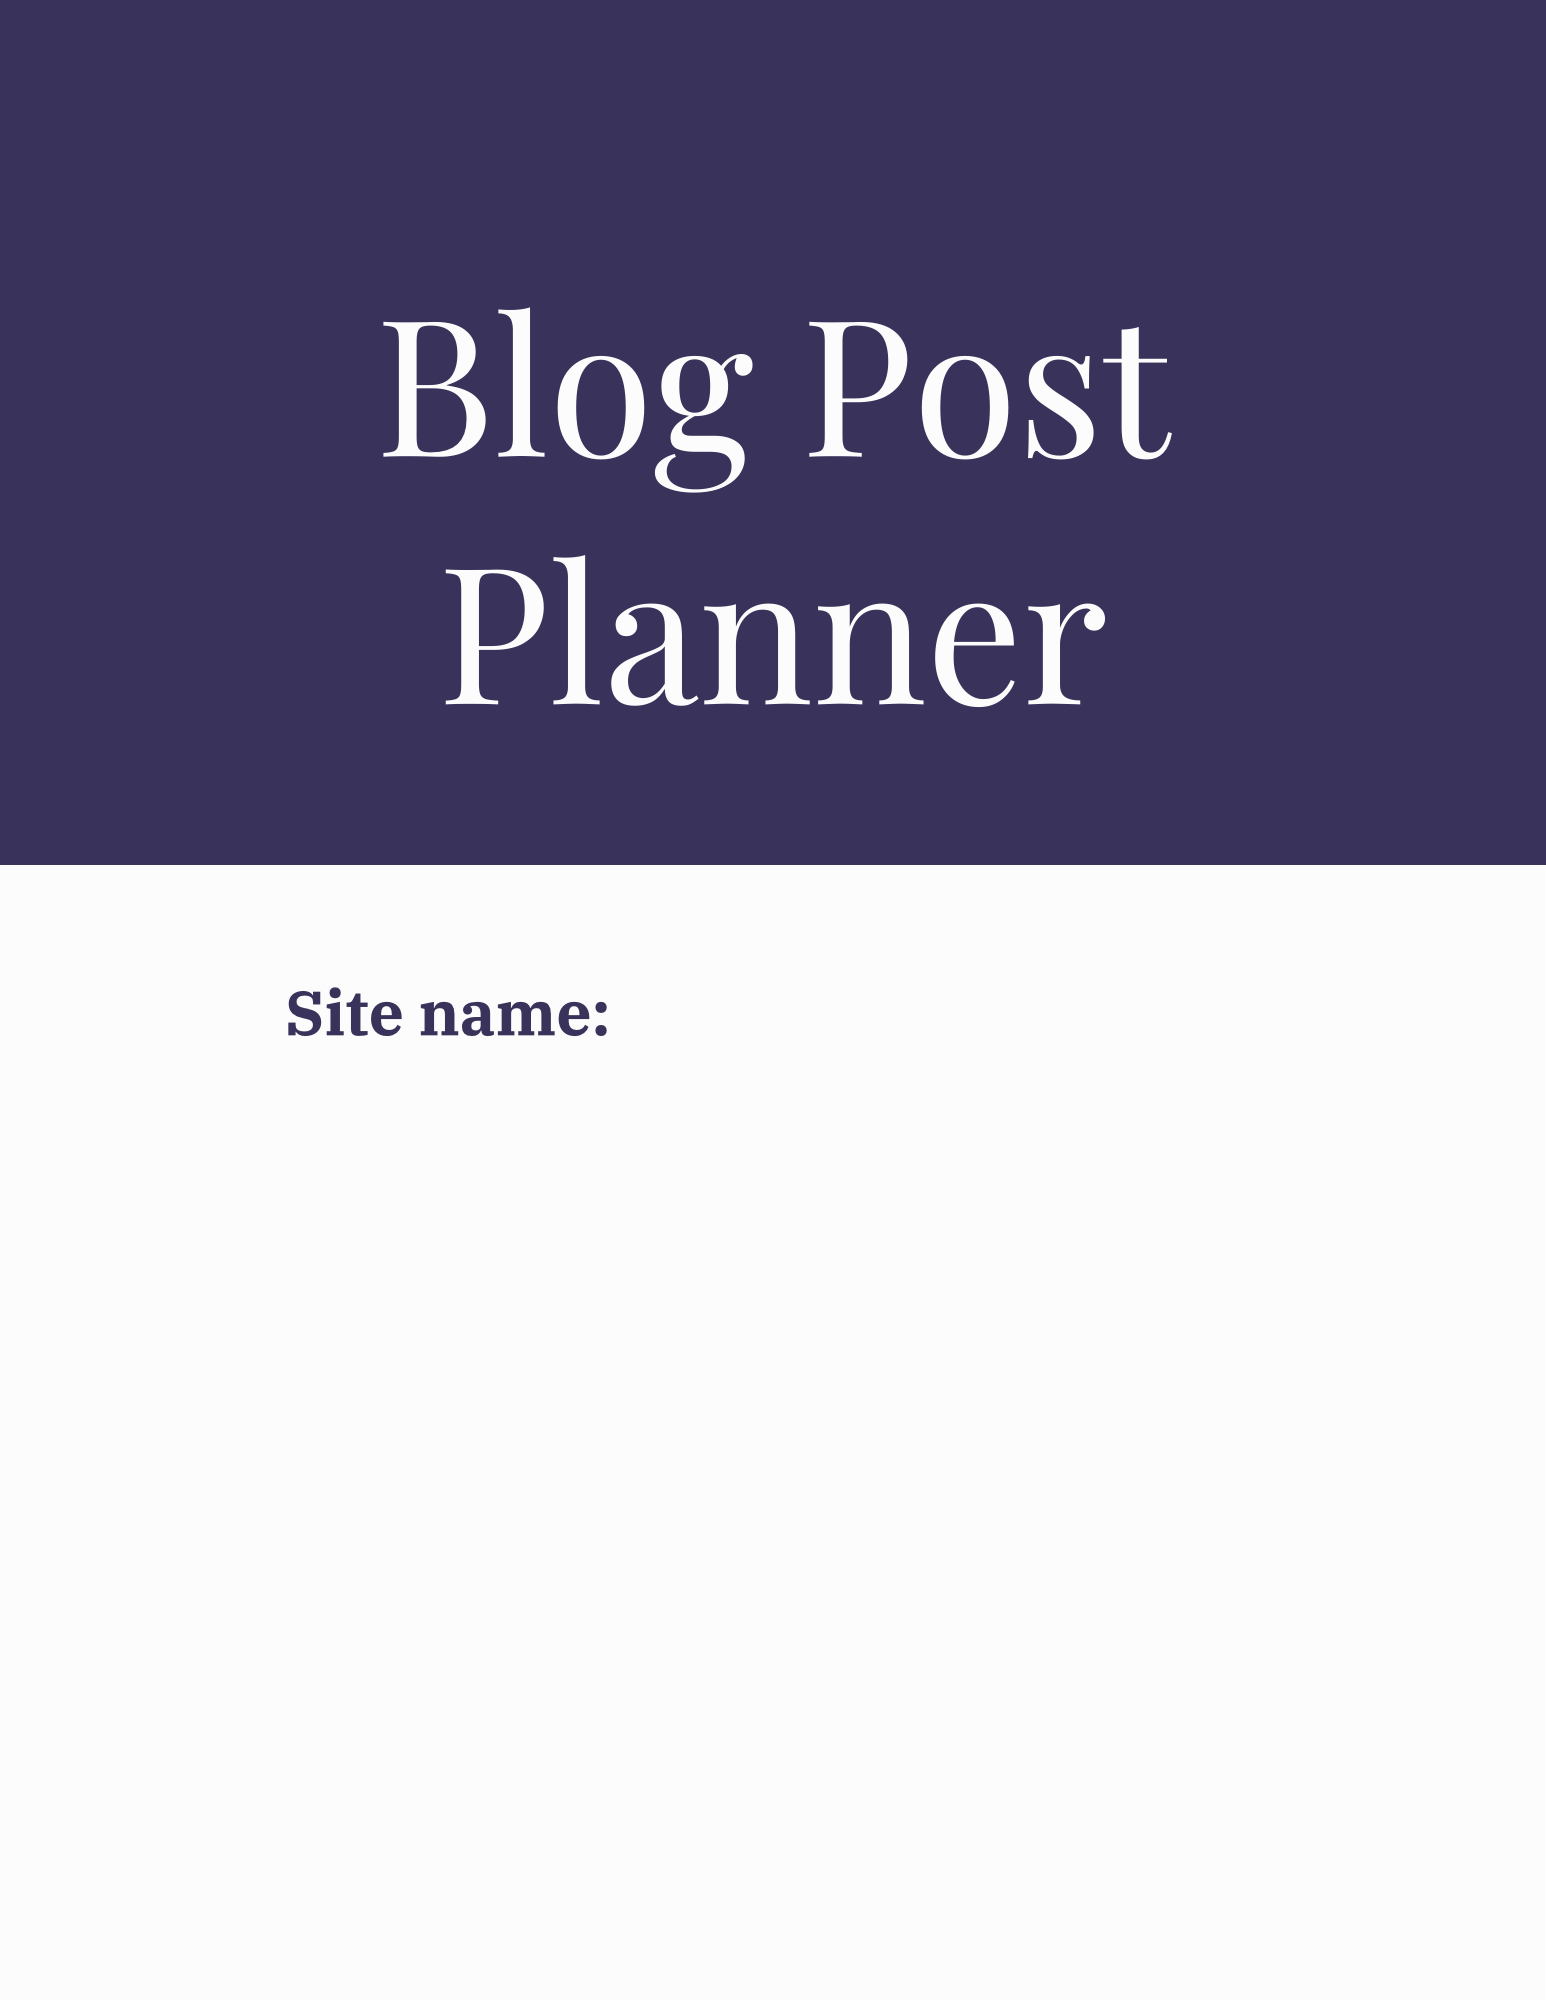 Blog Post Planner for Entrepreneurs